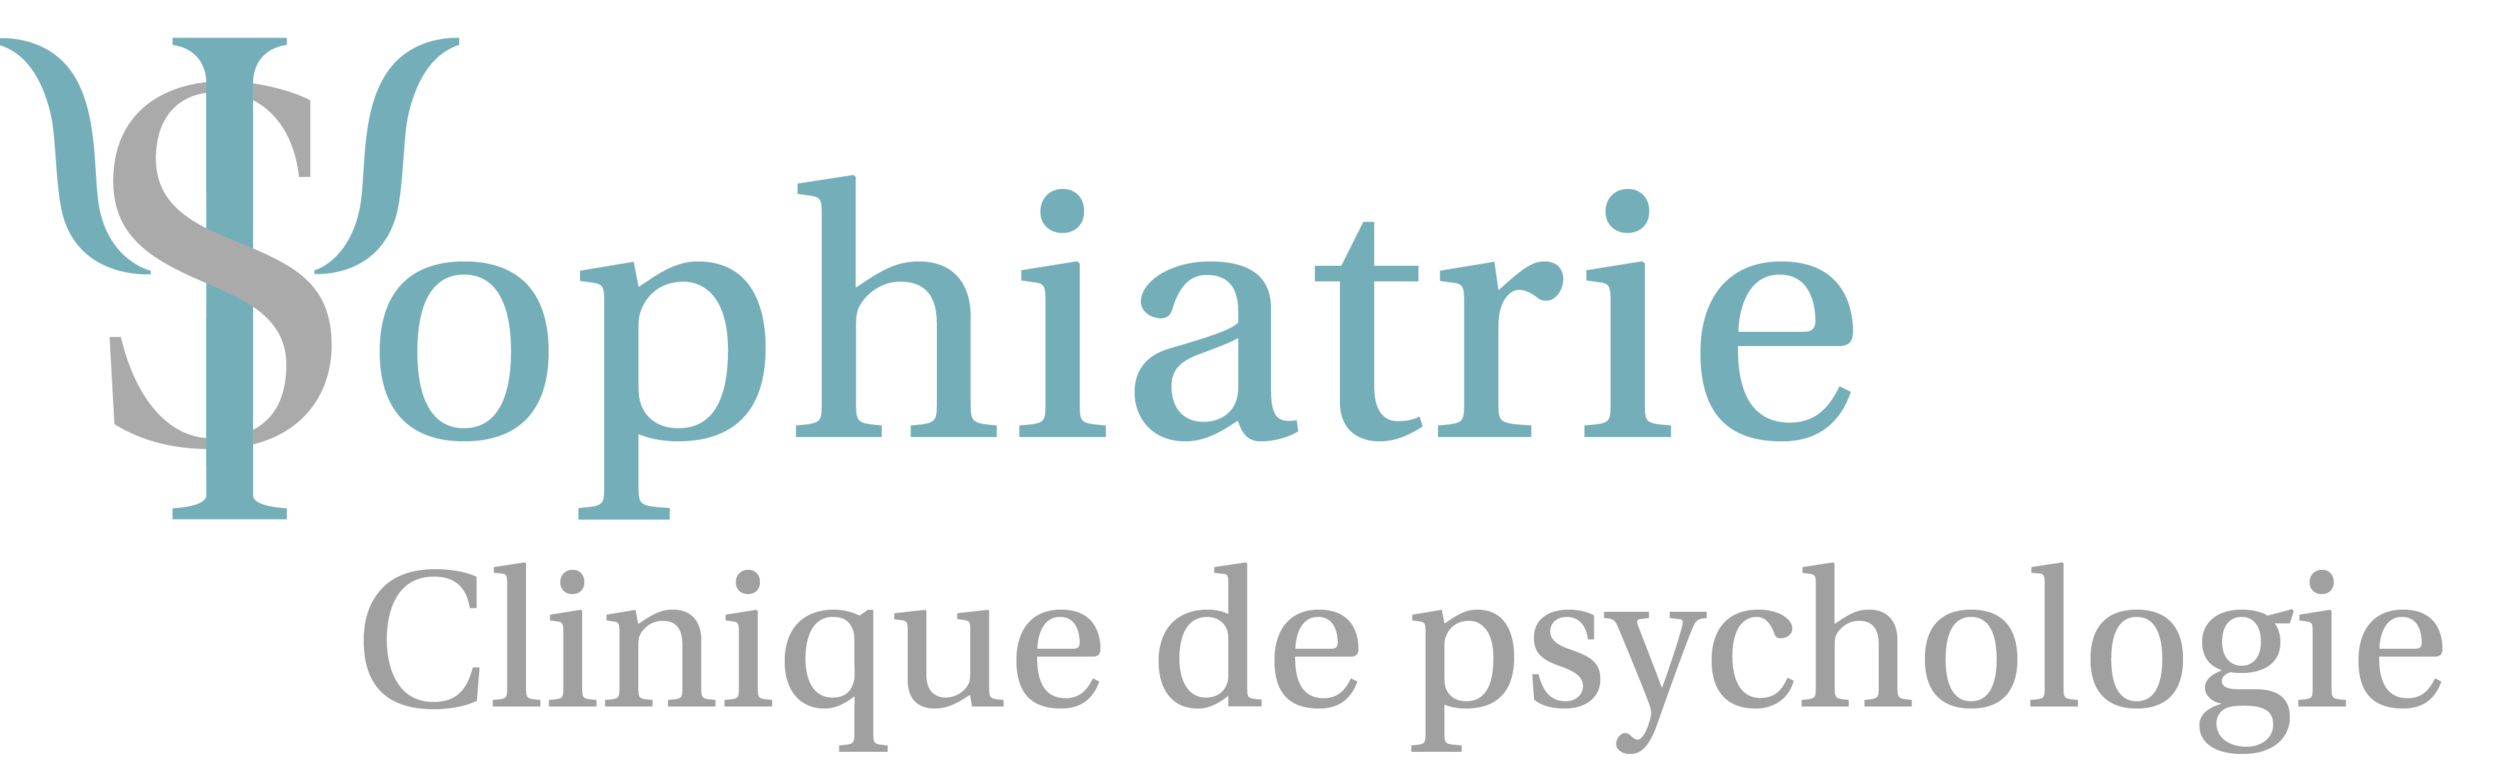 Psy Sophiatrie | Clinique de psychologie | Montreal